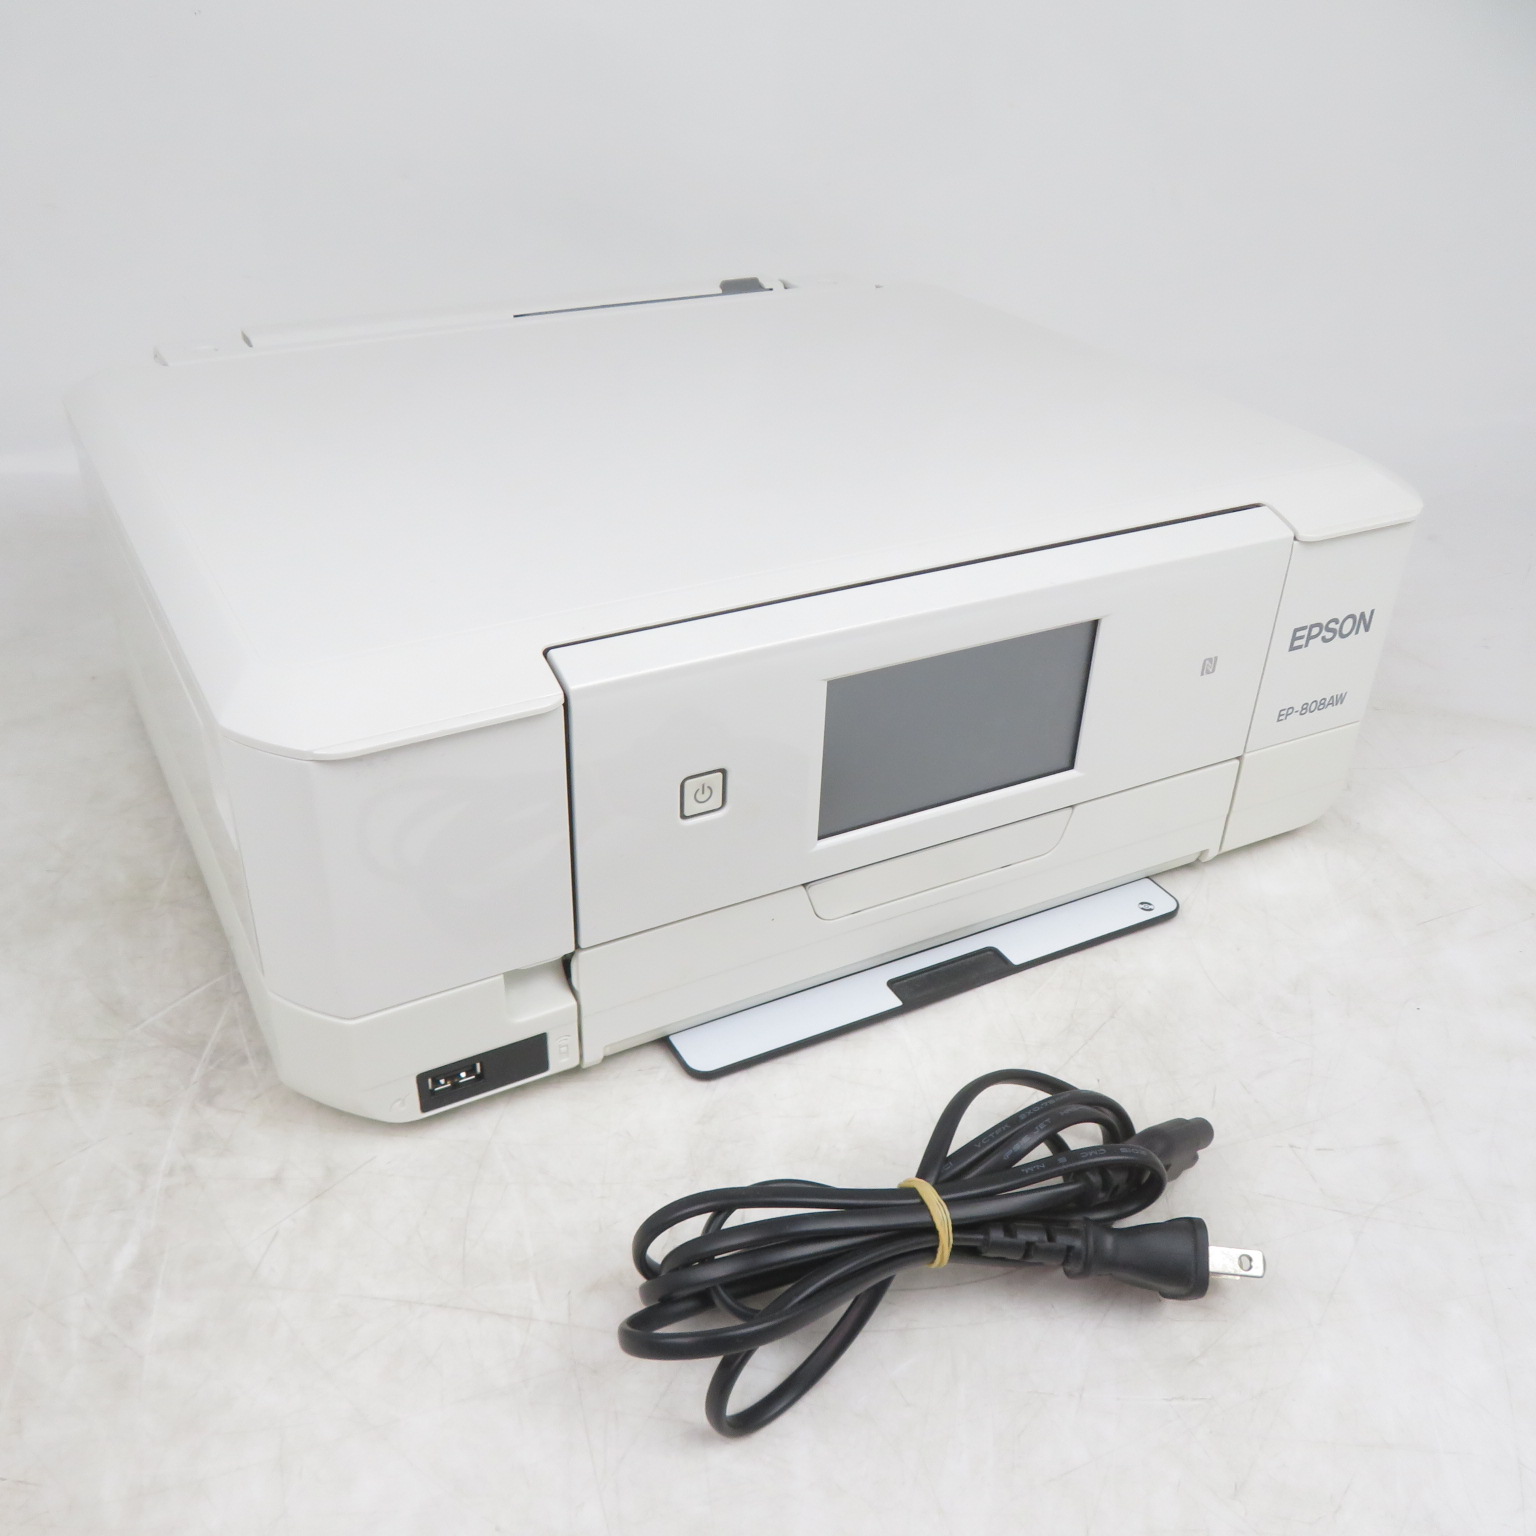 EPSON エプソン プリンター インクジェット複合機 カラリオ EP-808AW ホワイト